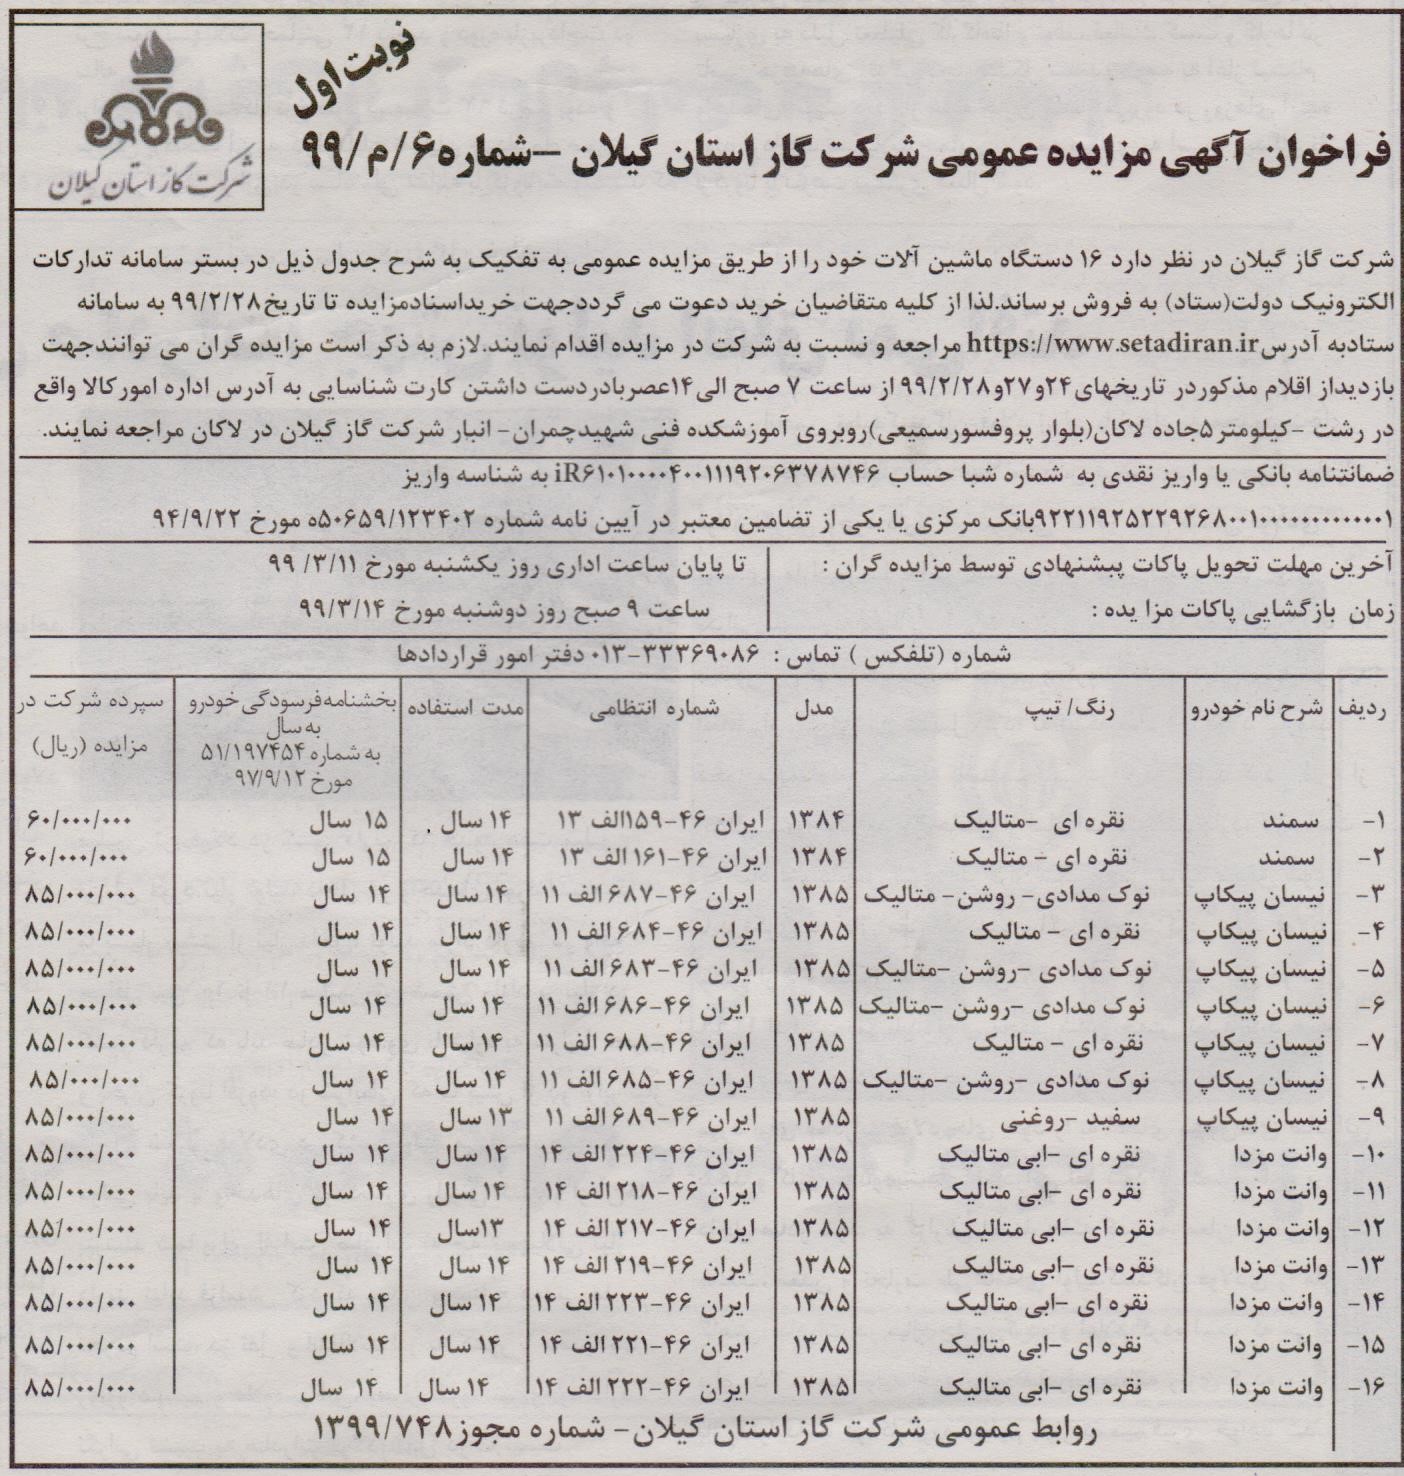 مزایده فروش ماشین آلات شرکت گاز استان گیلان - 22 اردیبهشت